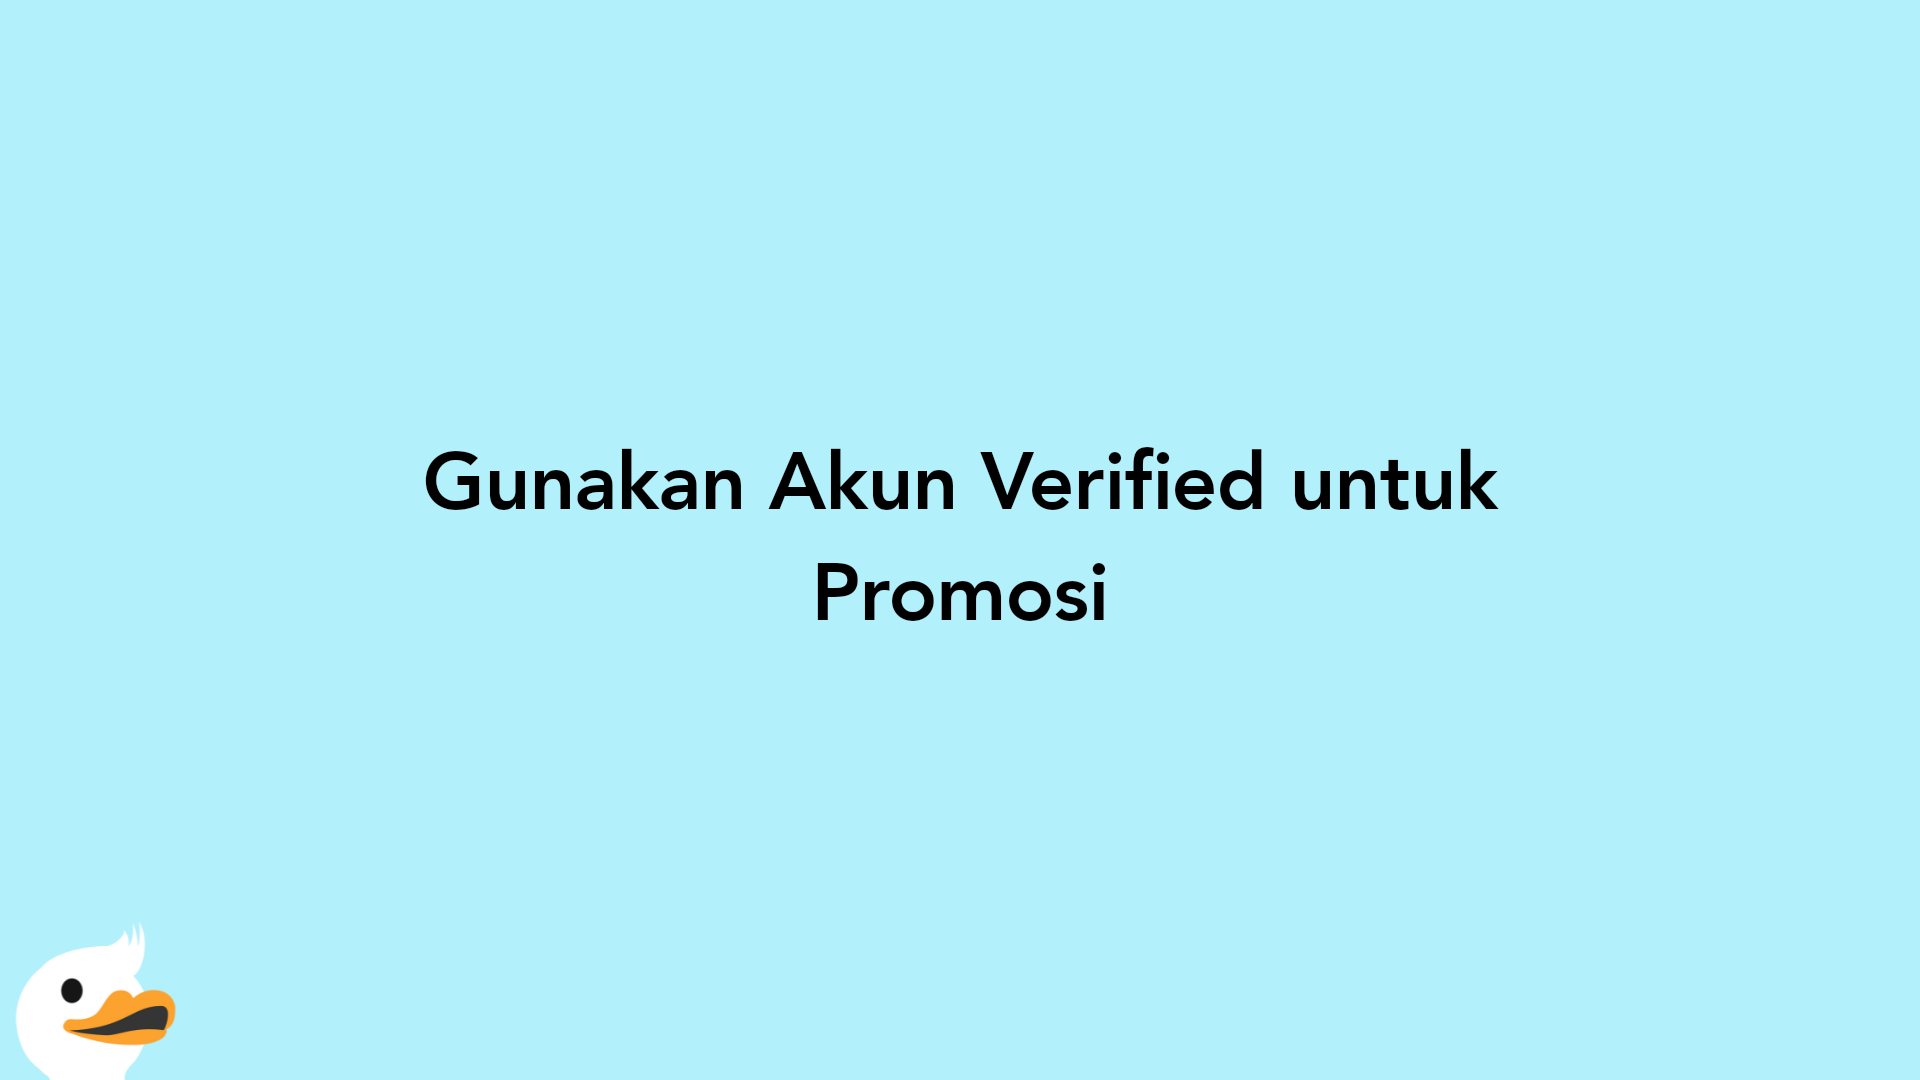 Gunakan Akun Verified untuk Promosi